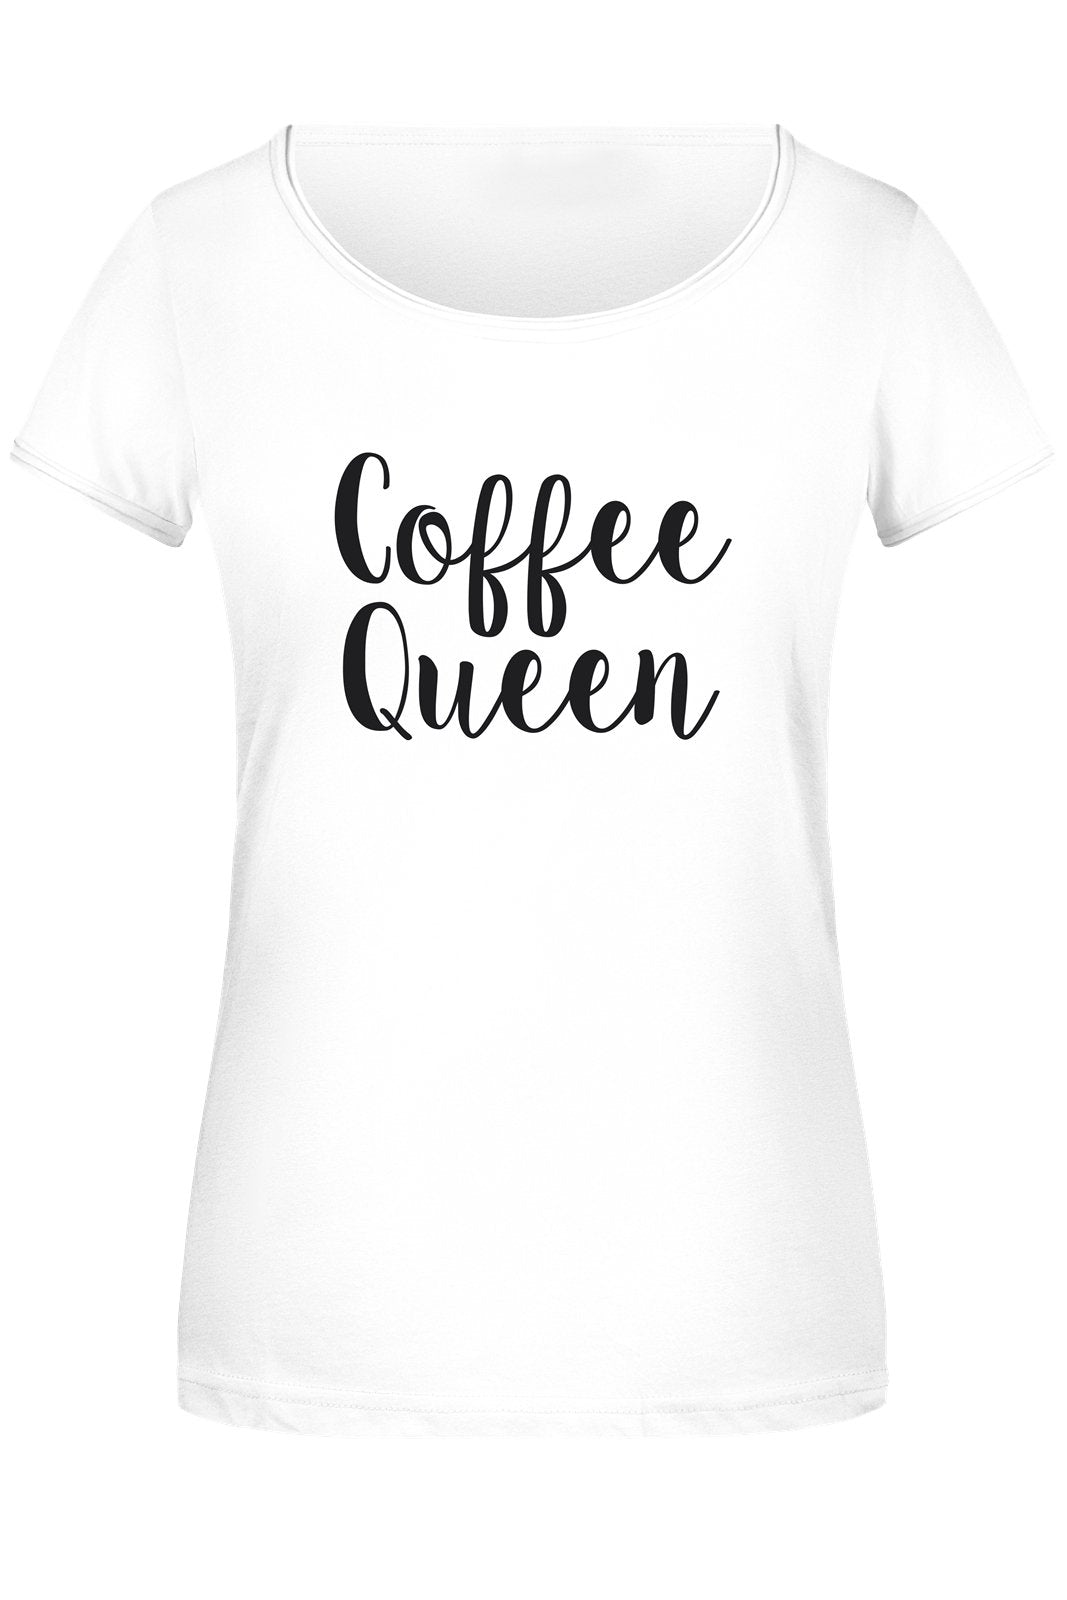 Bild: T-Shirt Damen - Coffee Queen Geschenkidee